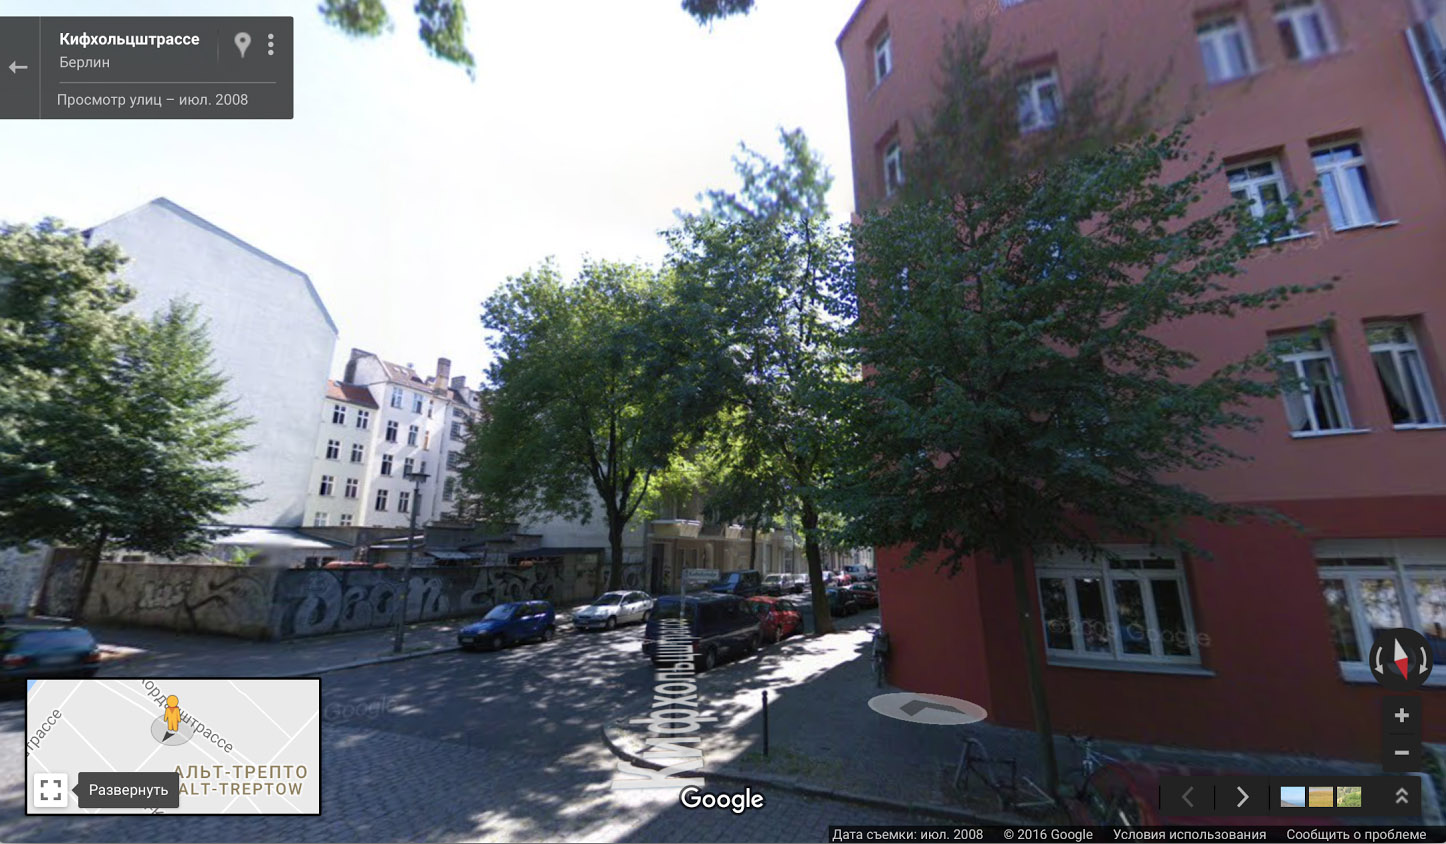 Вот наш временный дом в Берлине. Если погулять стрит-вью по окрестностям, то можно увидеть огромный парк, полный торговцев травкой